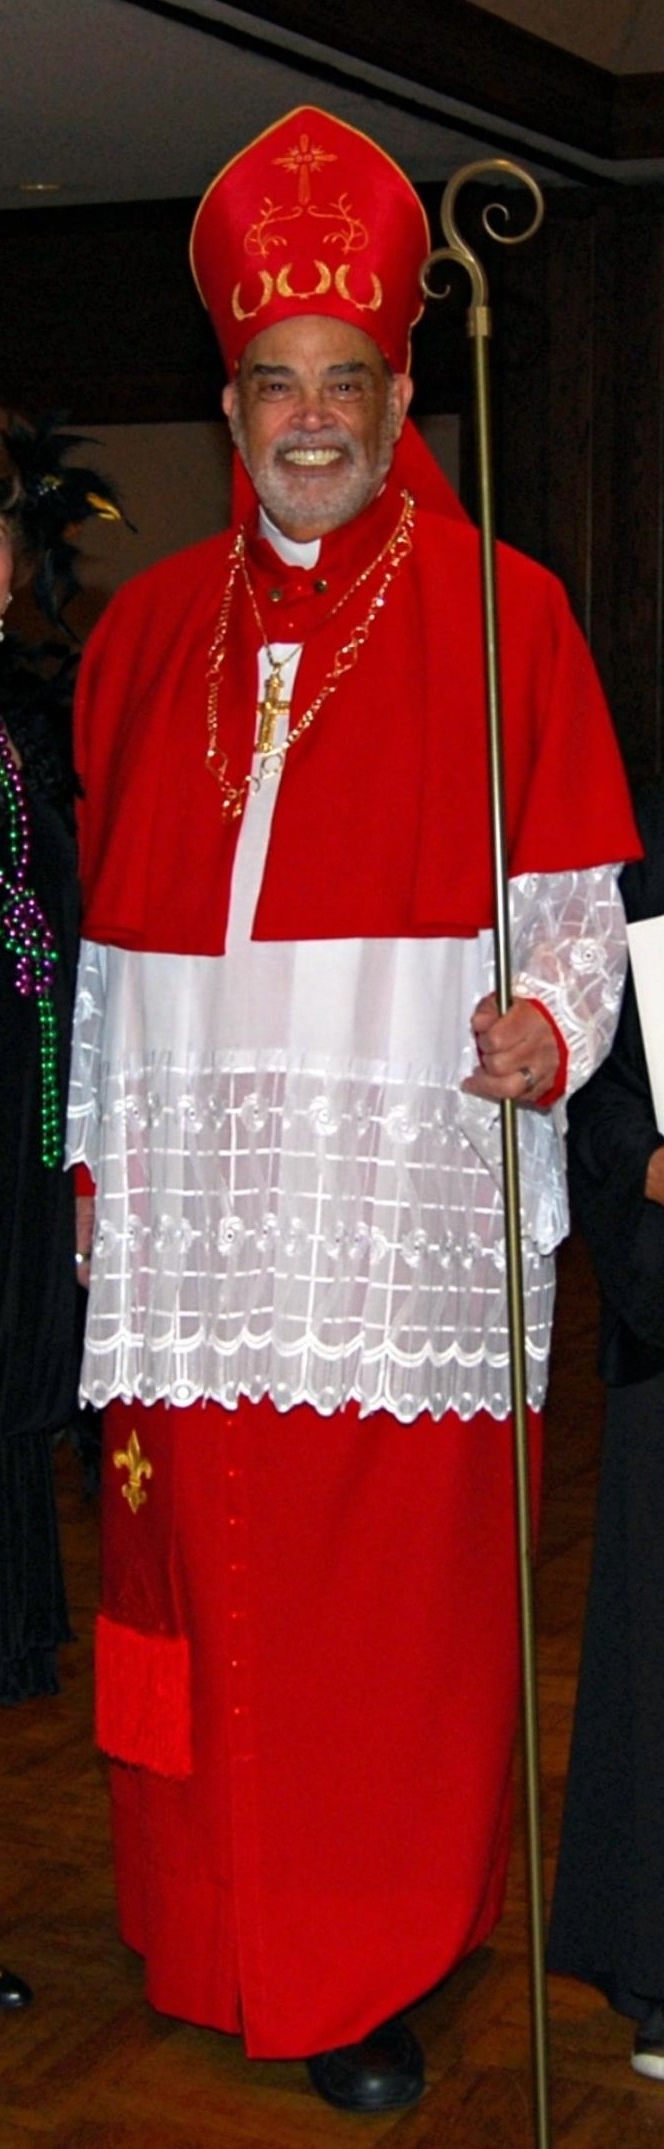 The Cardinal- giseleperez